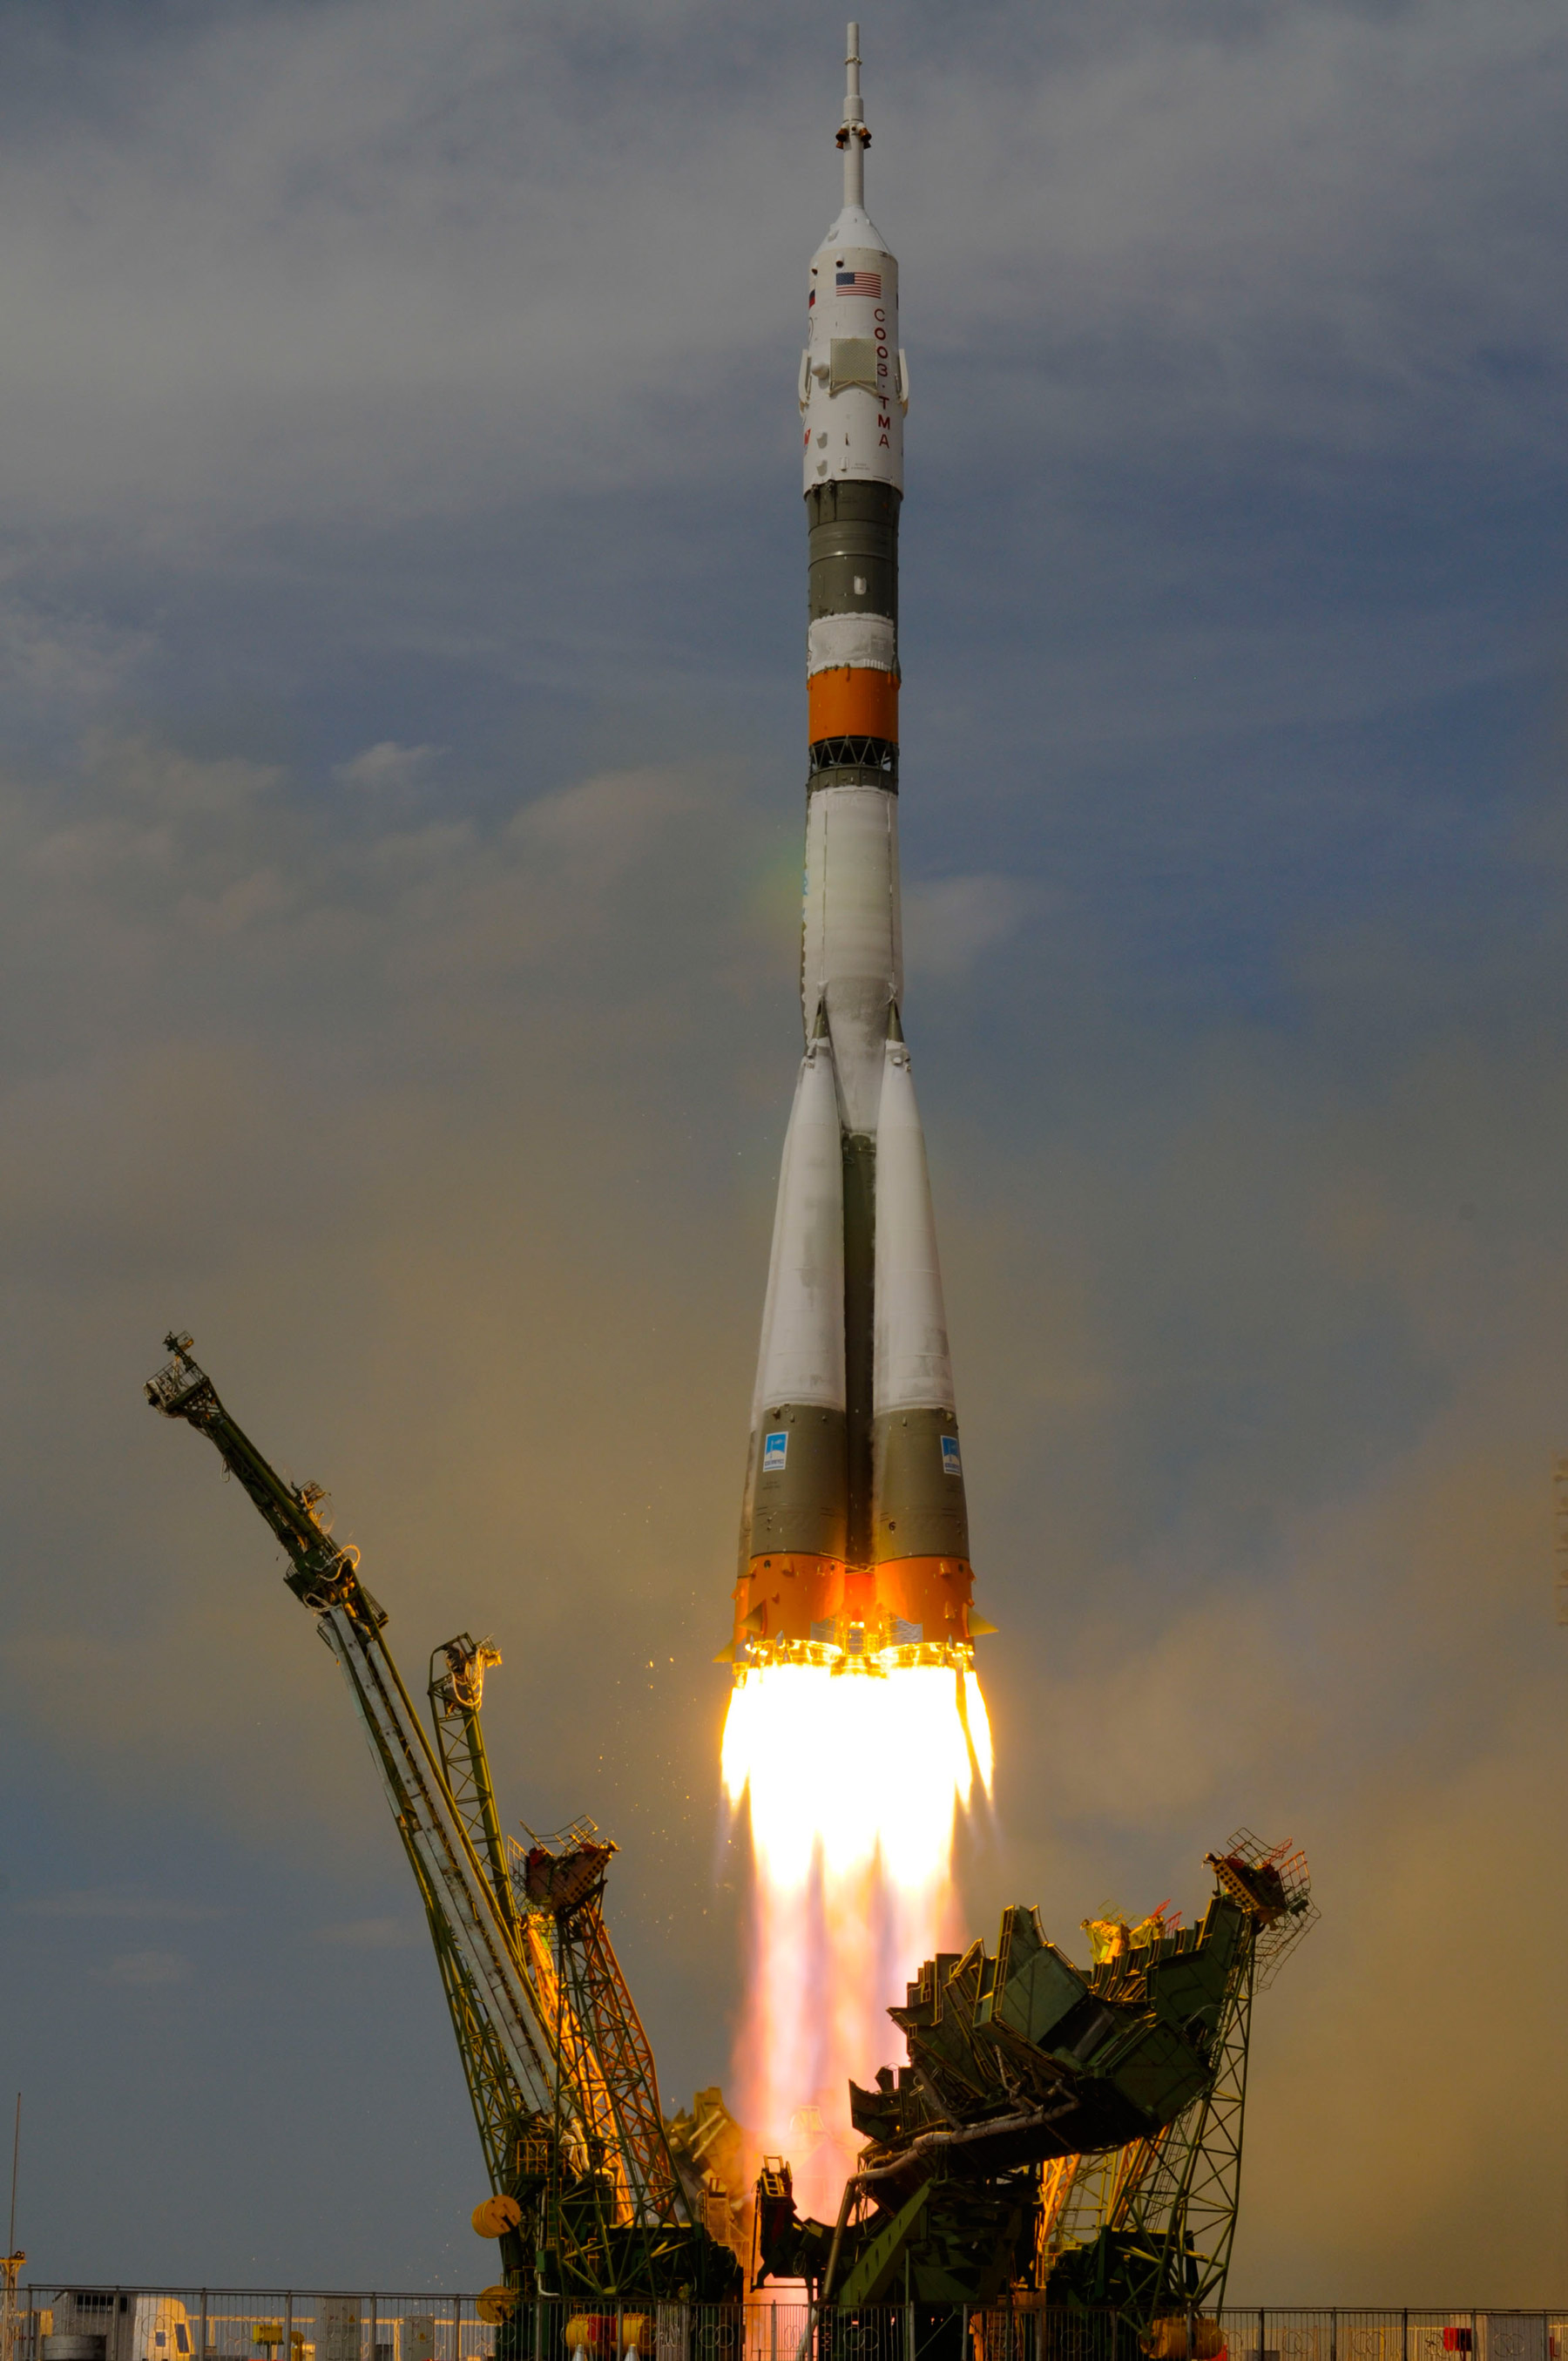 La récente série d'échecs qui a provoqué la perte de six satellites montre que bon nombre de lanceurs russes sont en fin de cycle. Si elle veut conserver son rang de puissance spatiale, la Russie serait bien inspirée d'accélérer le développement des futurs lanceurs Angara. À l'image, le décollage d'un Soyouz avec à son bord un équipage de trois astronautes, dont l'Européen Frank De Winne (mai 2009). © Esa/S. Corvaja